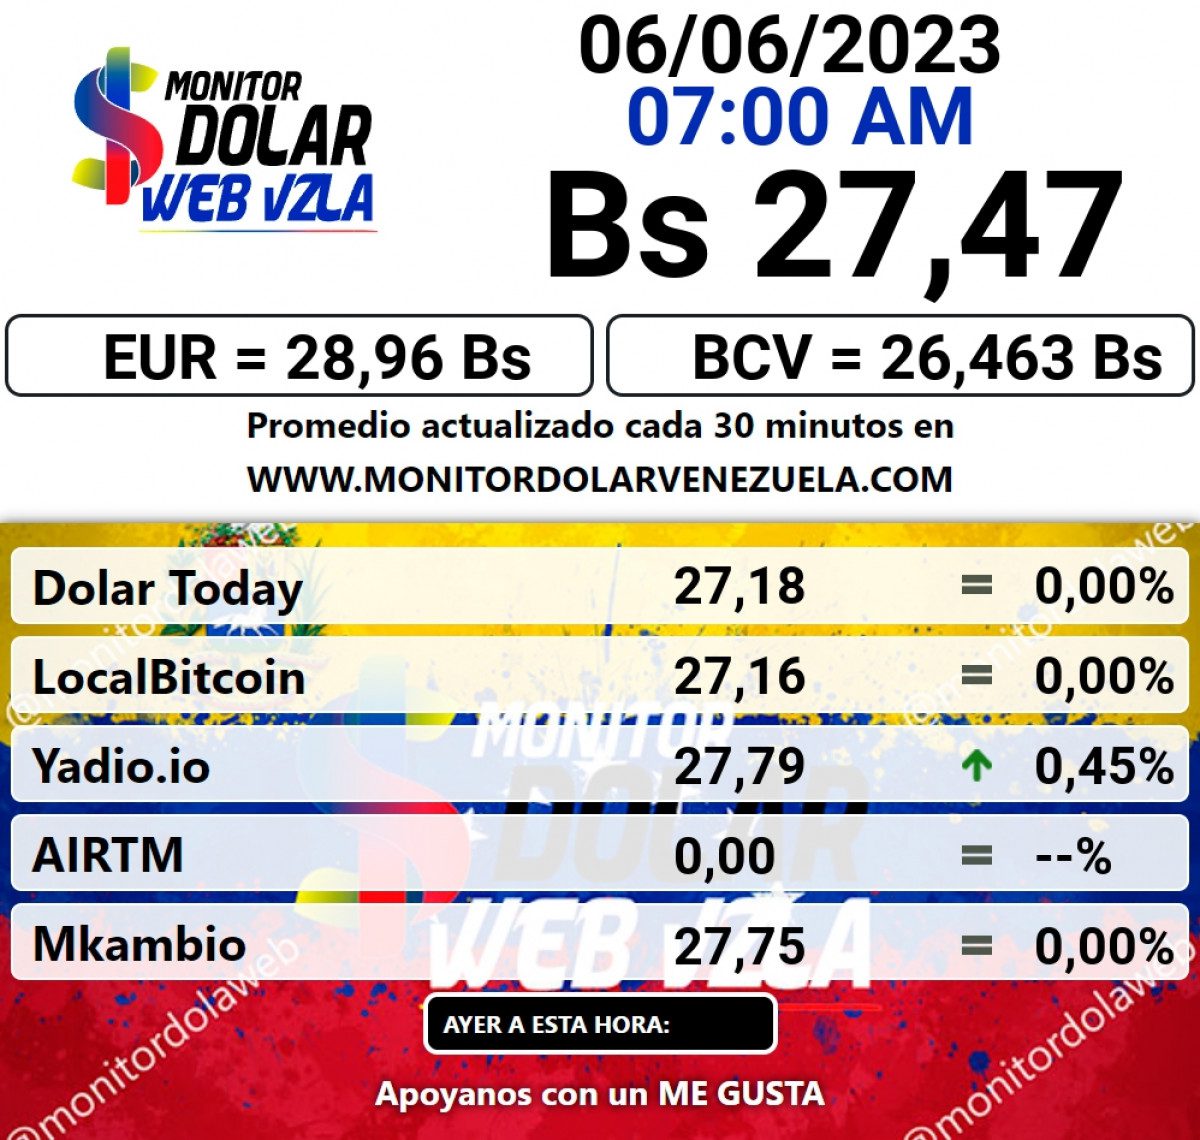 dolartoday en venezuela precio del dolar este martes 6 de junio de 2023 laverdaddemonagas.com monitor dolar1